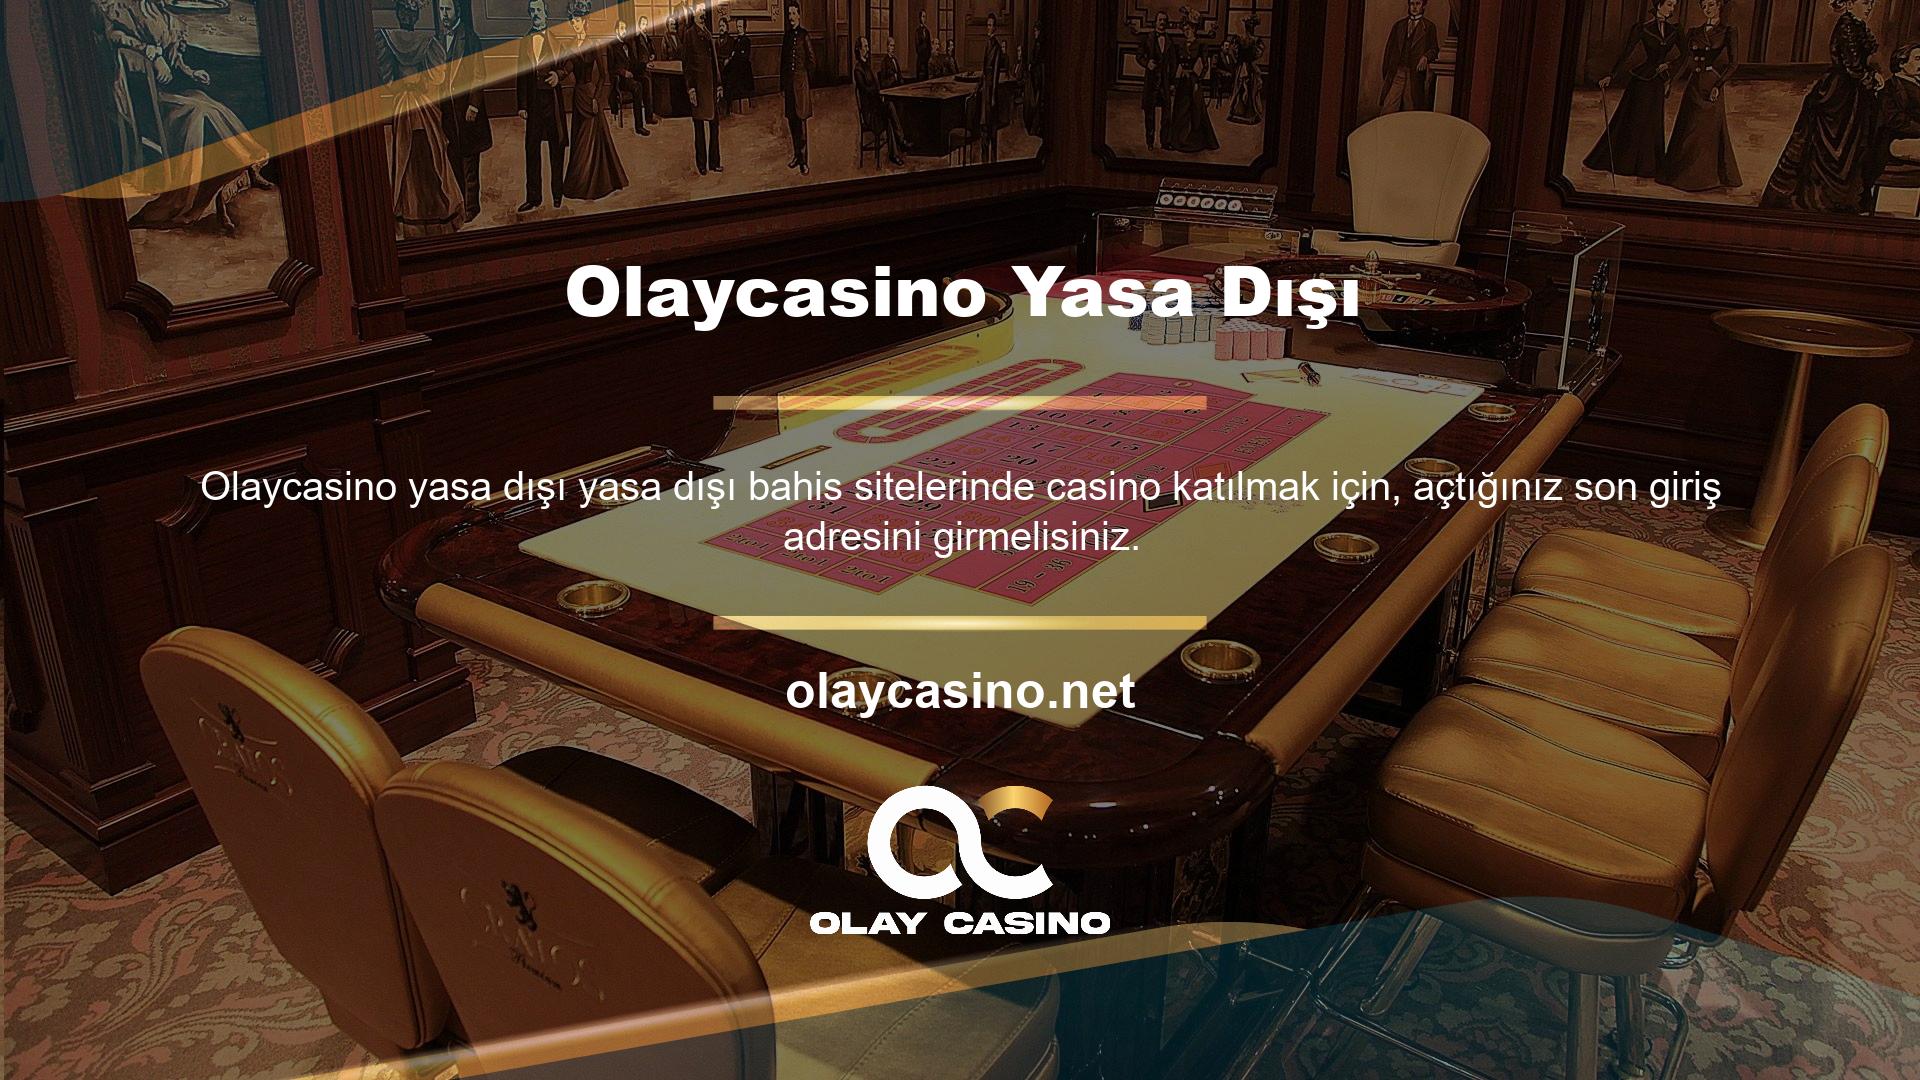 BTK, çevrimiçi casinolara ve diğer yasaklı bahislere girişi engeller